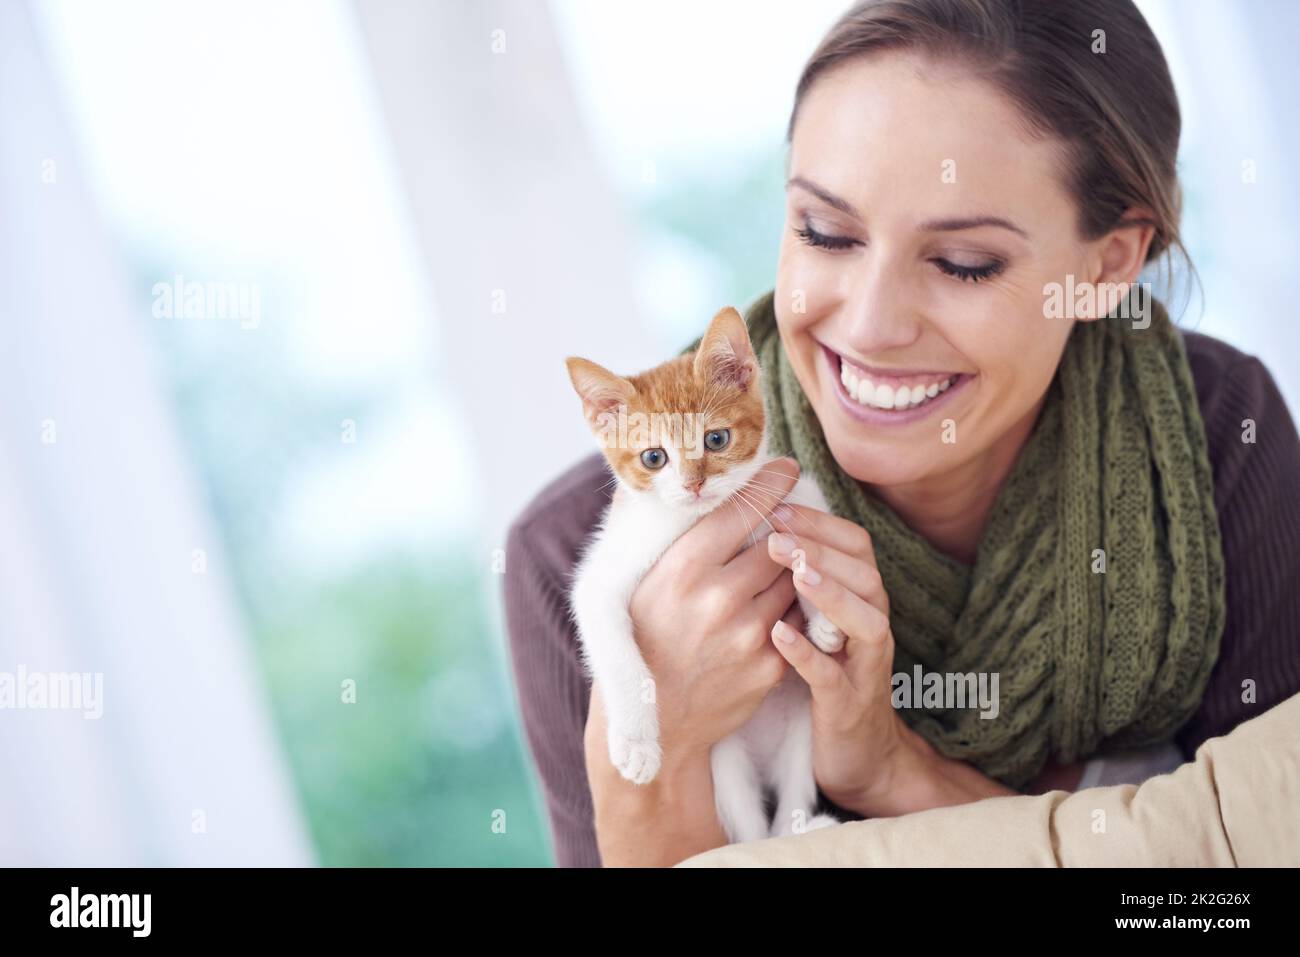 Le temps passé avec les chats n'est jamais perdu. Photo d'une jeune femme attrayante tenant un chaton. Banque D'Images